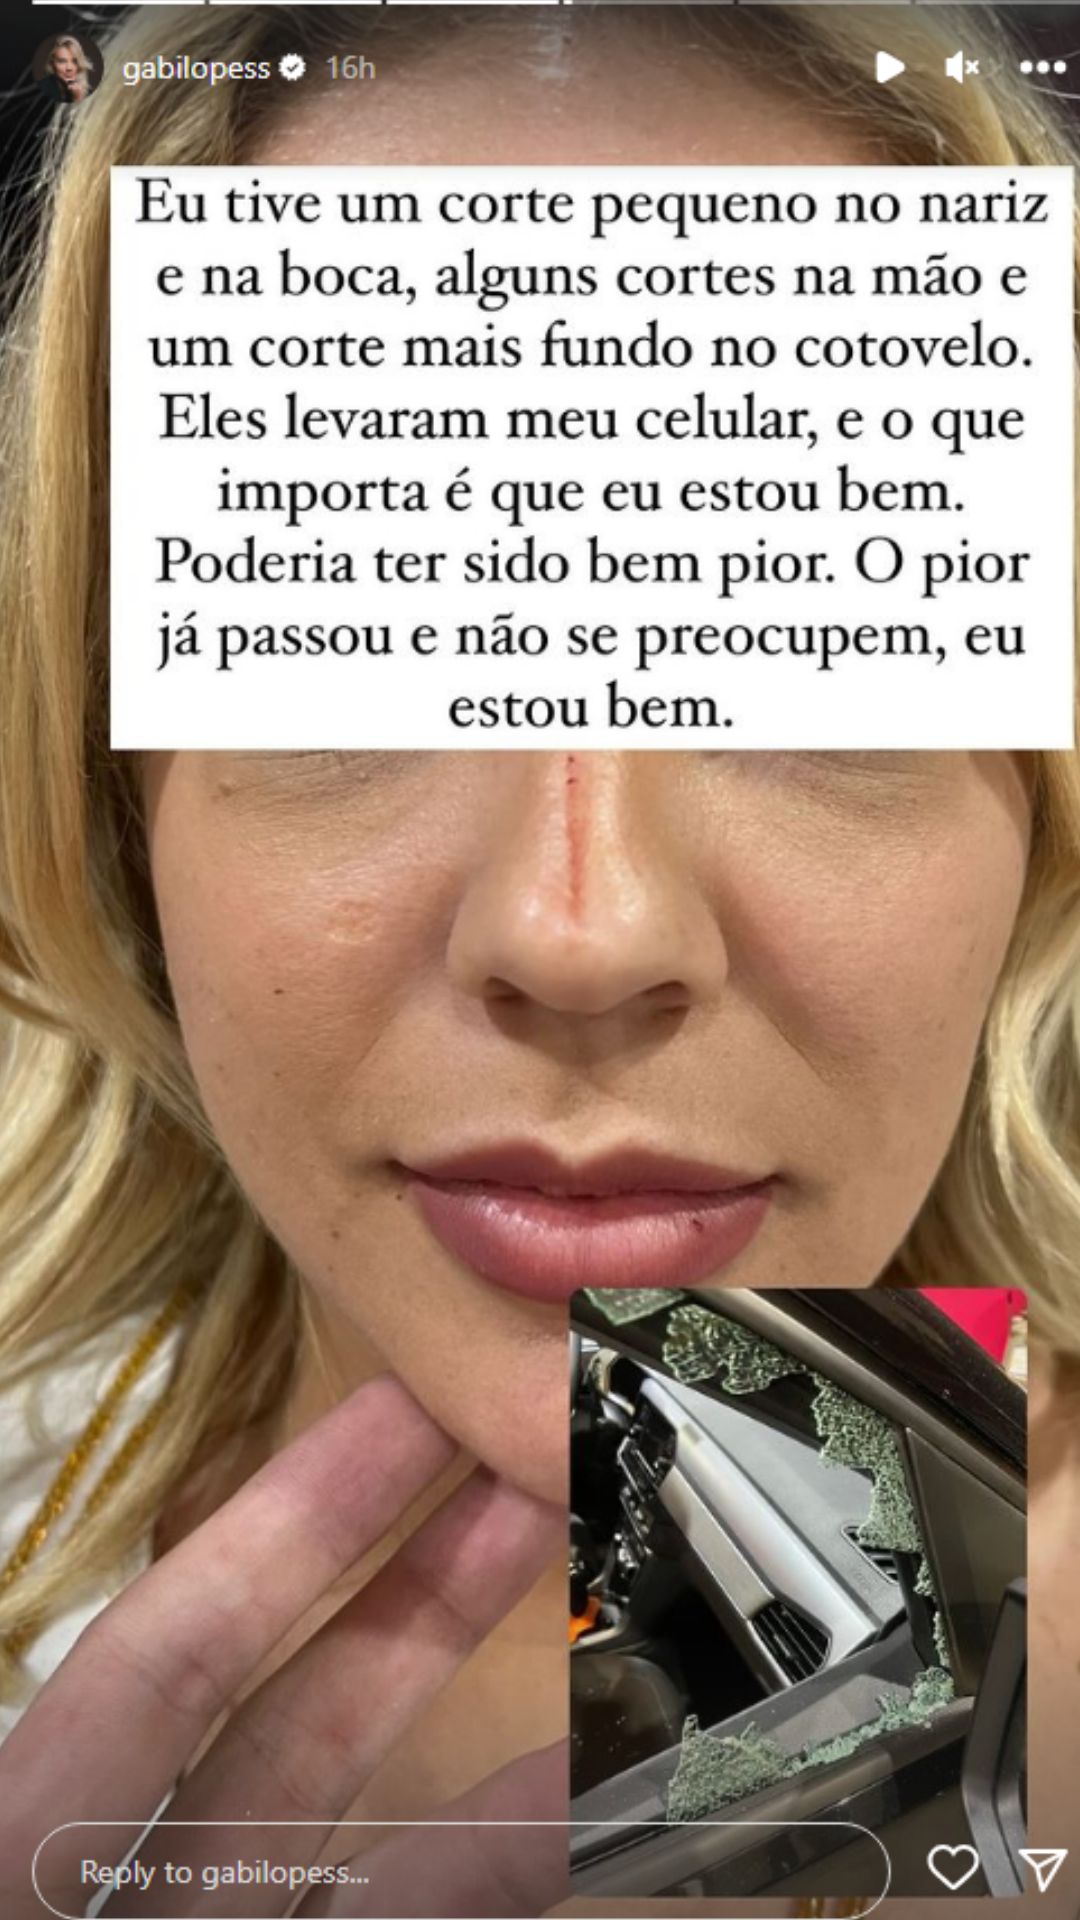 Gabi Lopes corre para o hospital após ser assaltada em São Paulo: "Filme de terror"